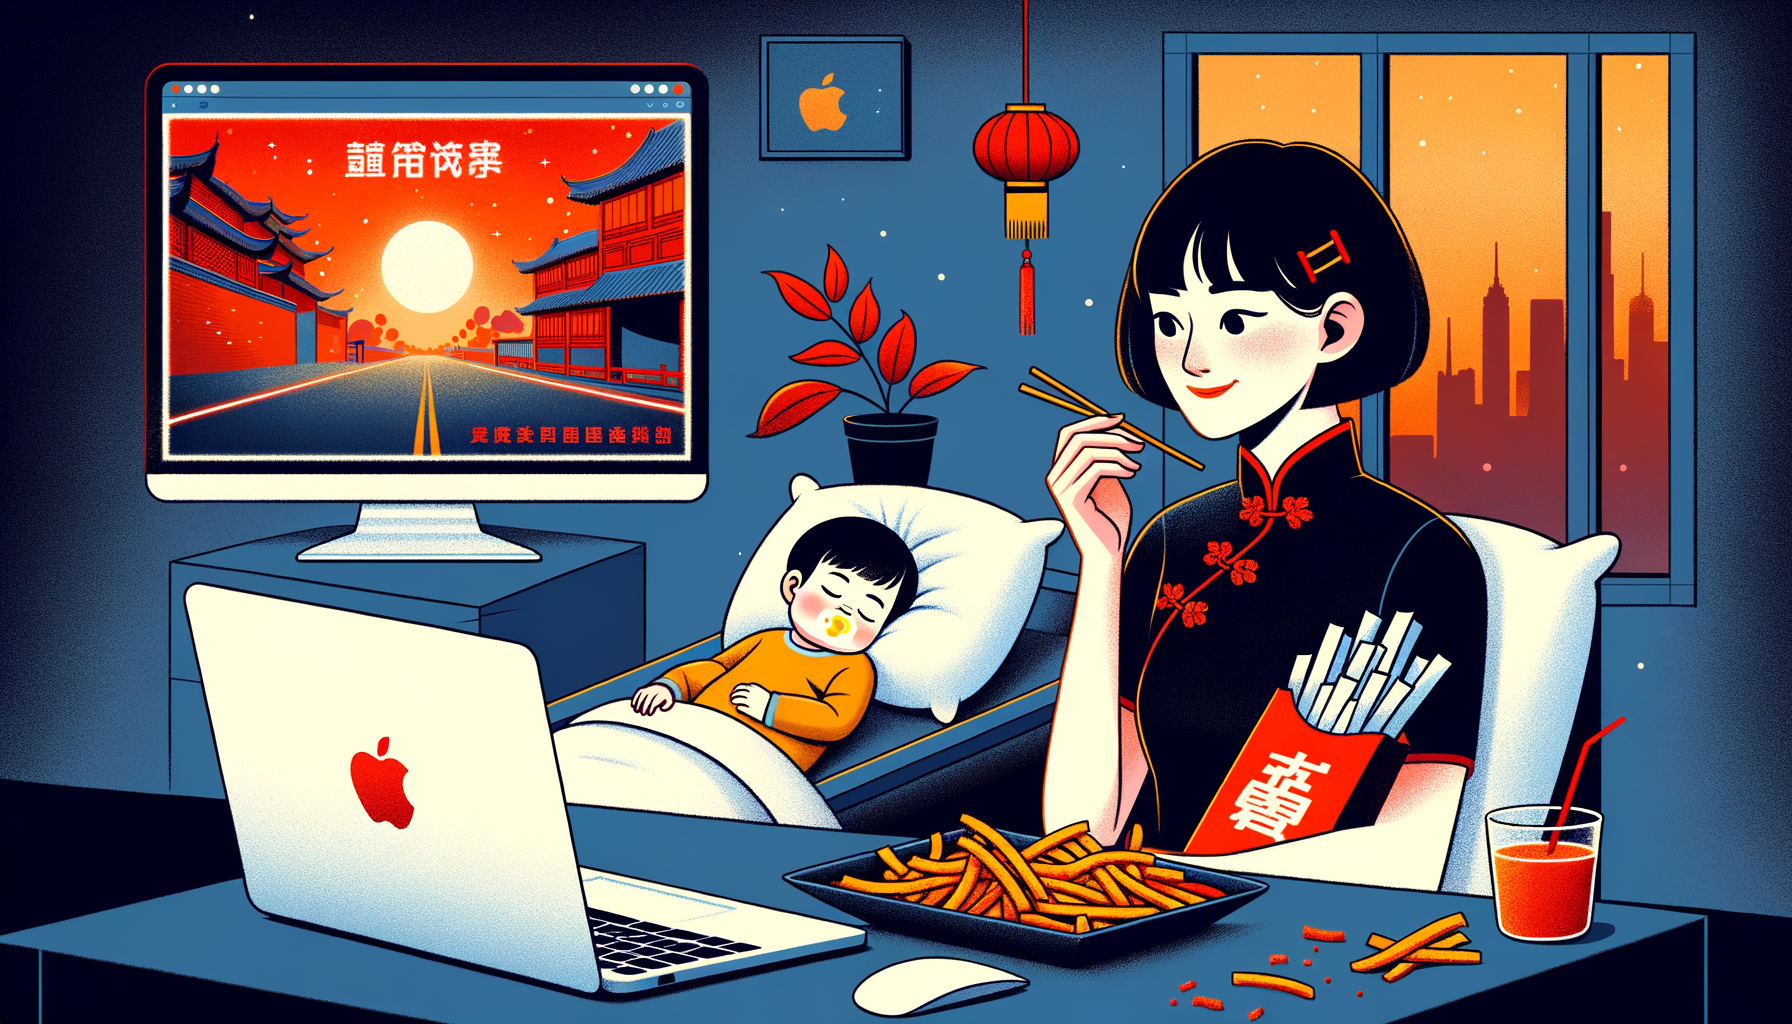 一个挂耳发型的年轻中国妈妈 坐在熟睡的女宝宝床边 吃着辣条看着苹果电脑屏幕